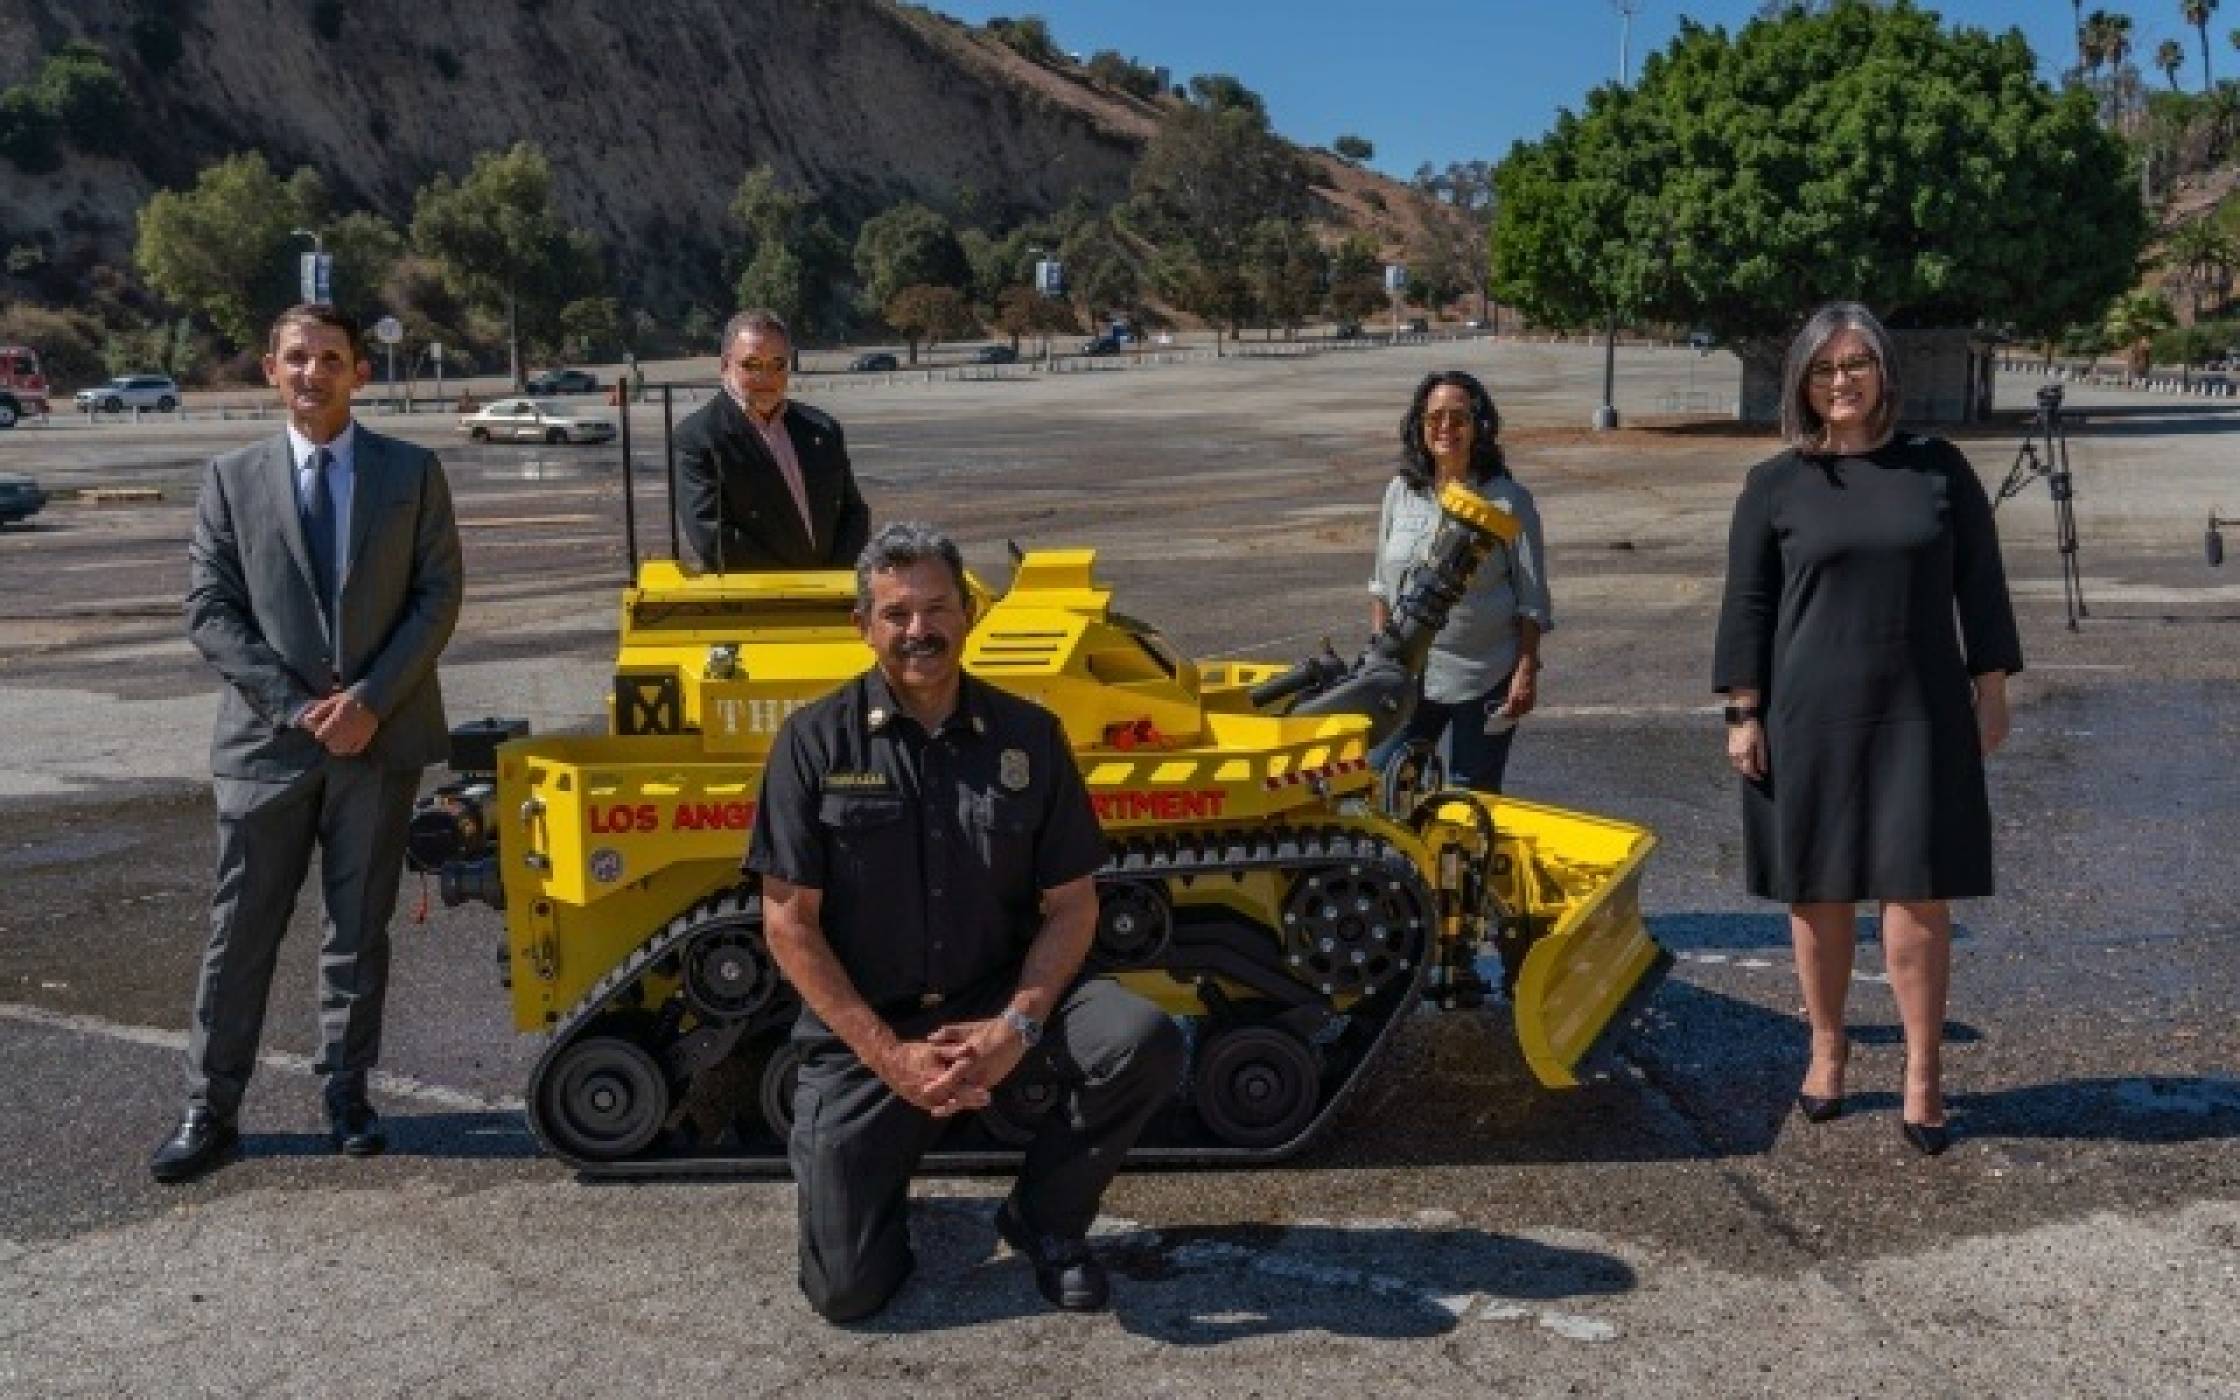  Първият робот пожарникар заработи в Лос Анджелис